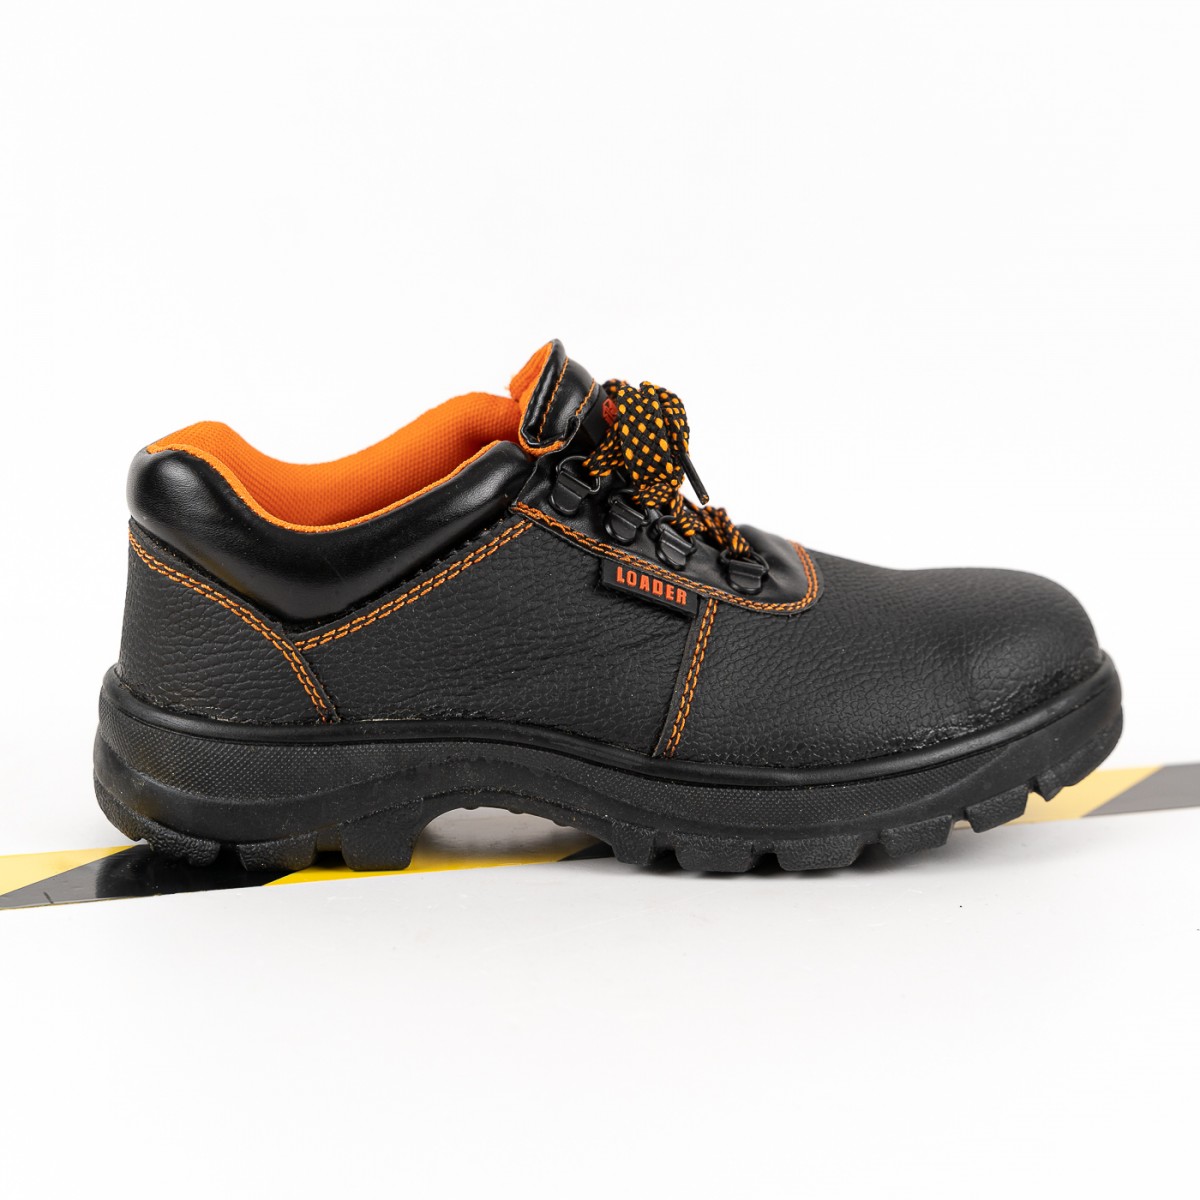 Incaltaminte santier, pantofi de lucru Loader, cu protectie, anti-alunecare, negru